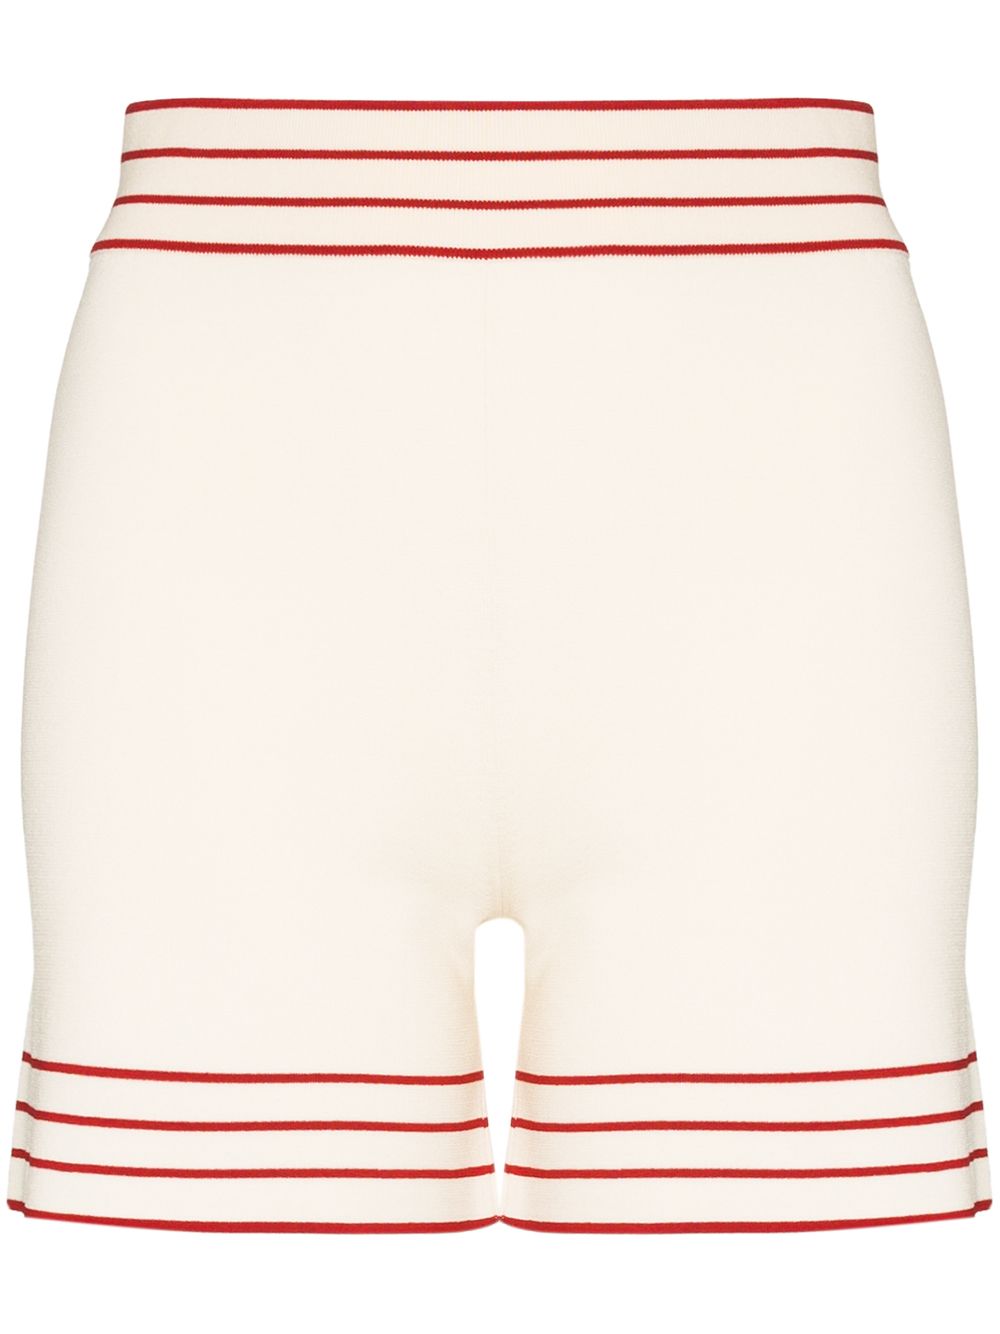 фото Odyssee шорты с контрастными полосками